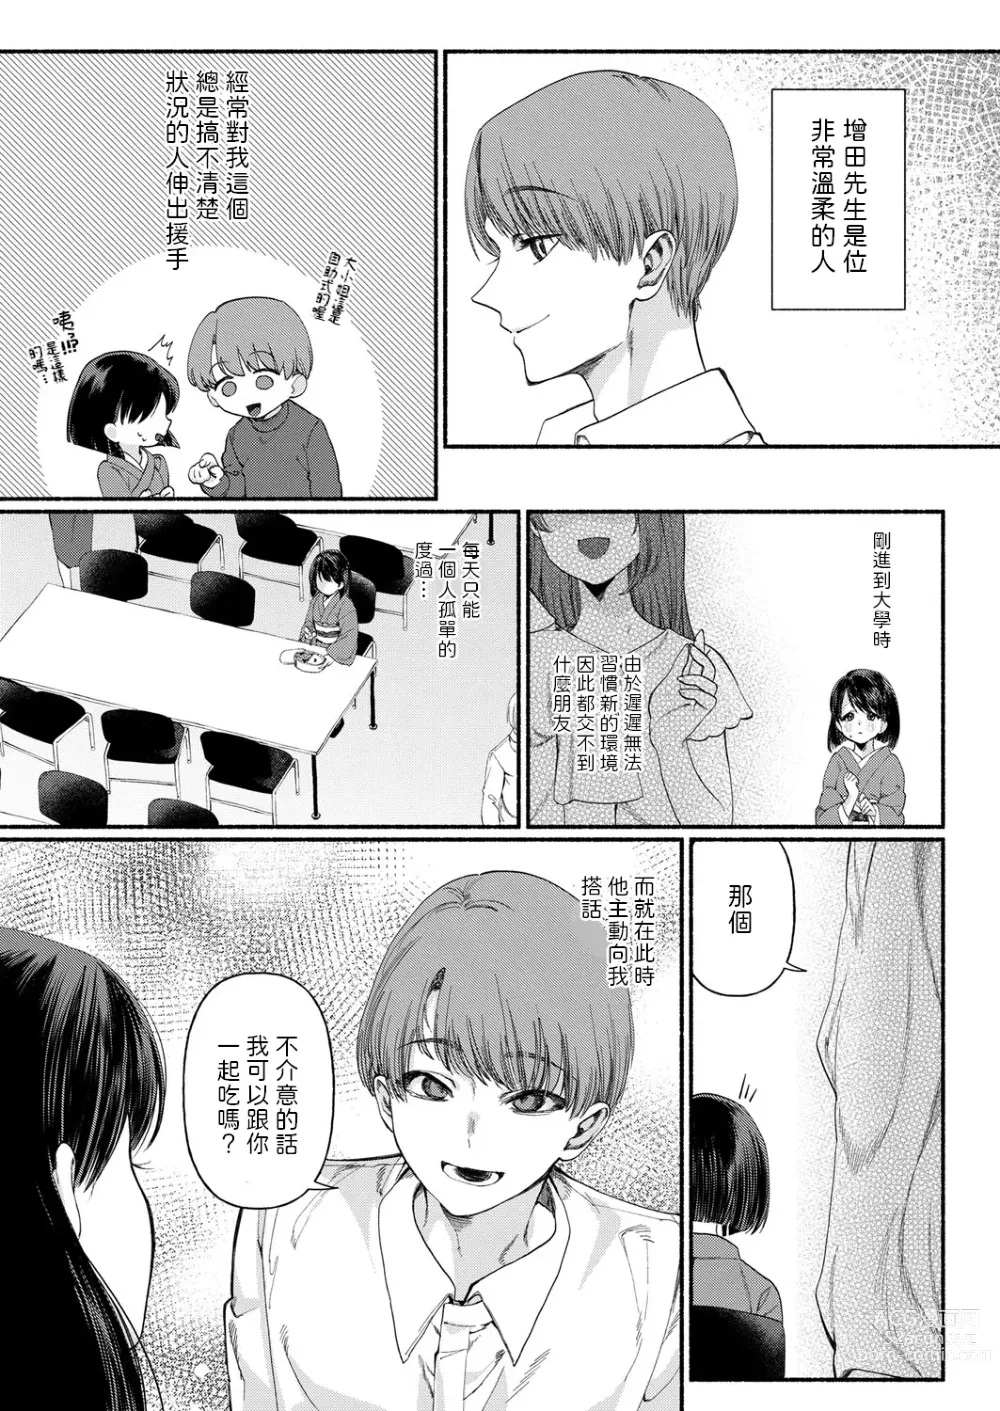 Page 3 of manga Hakoiri Musume wa Pet ni Ochiru -Zenpen-